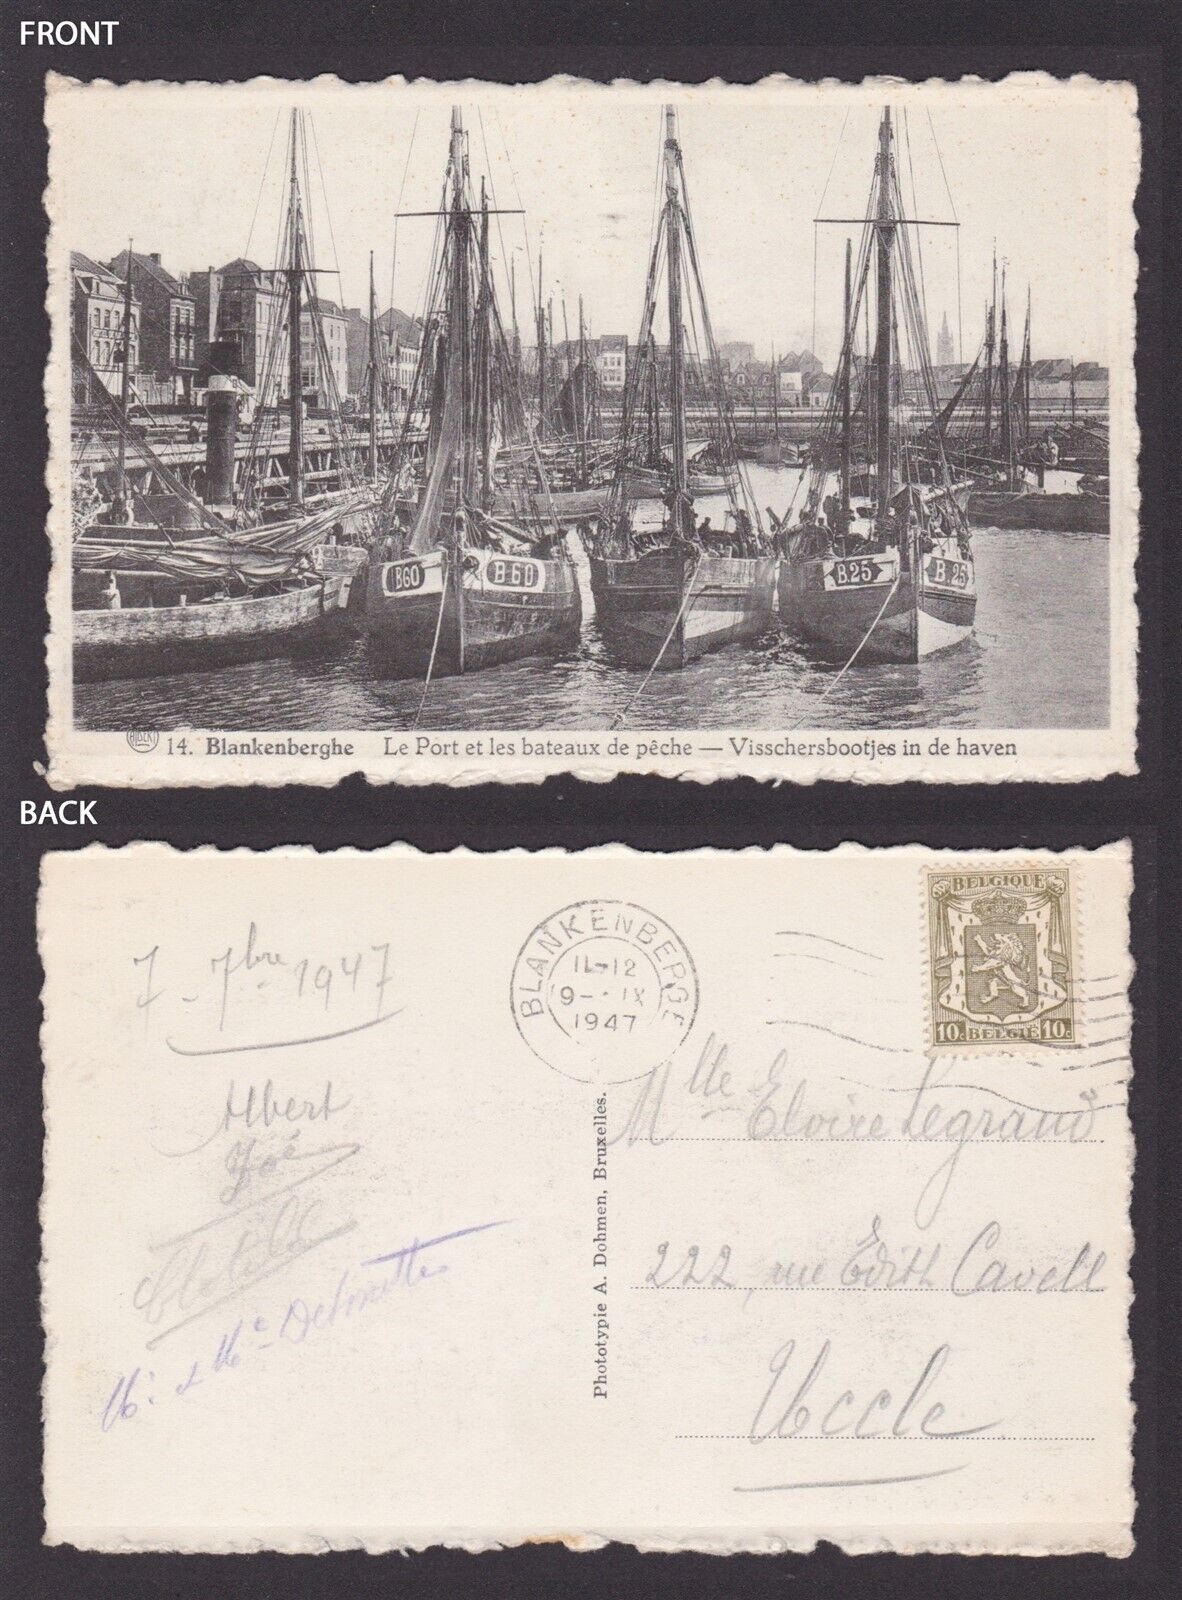 BELGIUM, Vintage postcard, Blankenberge, Le Port et les bateaux de pêche